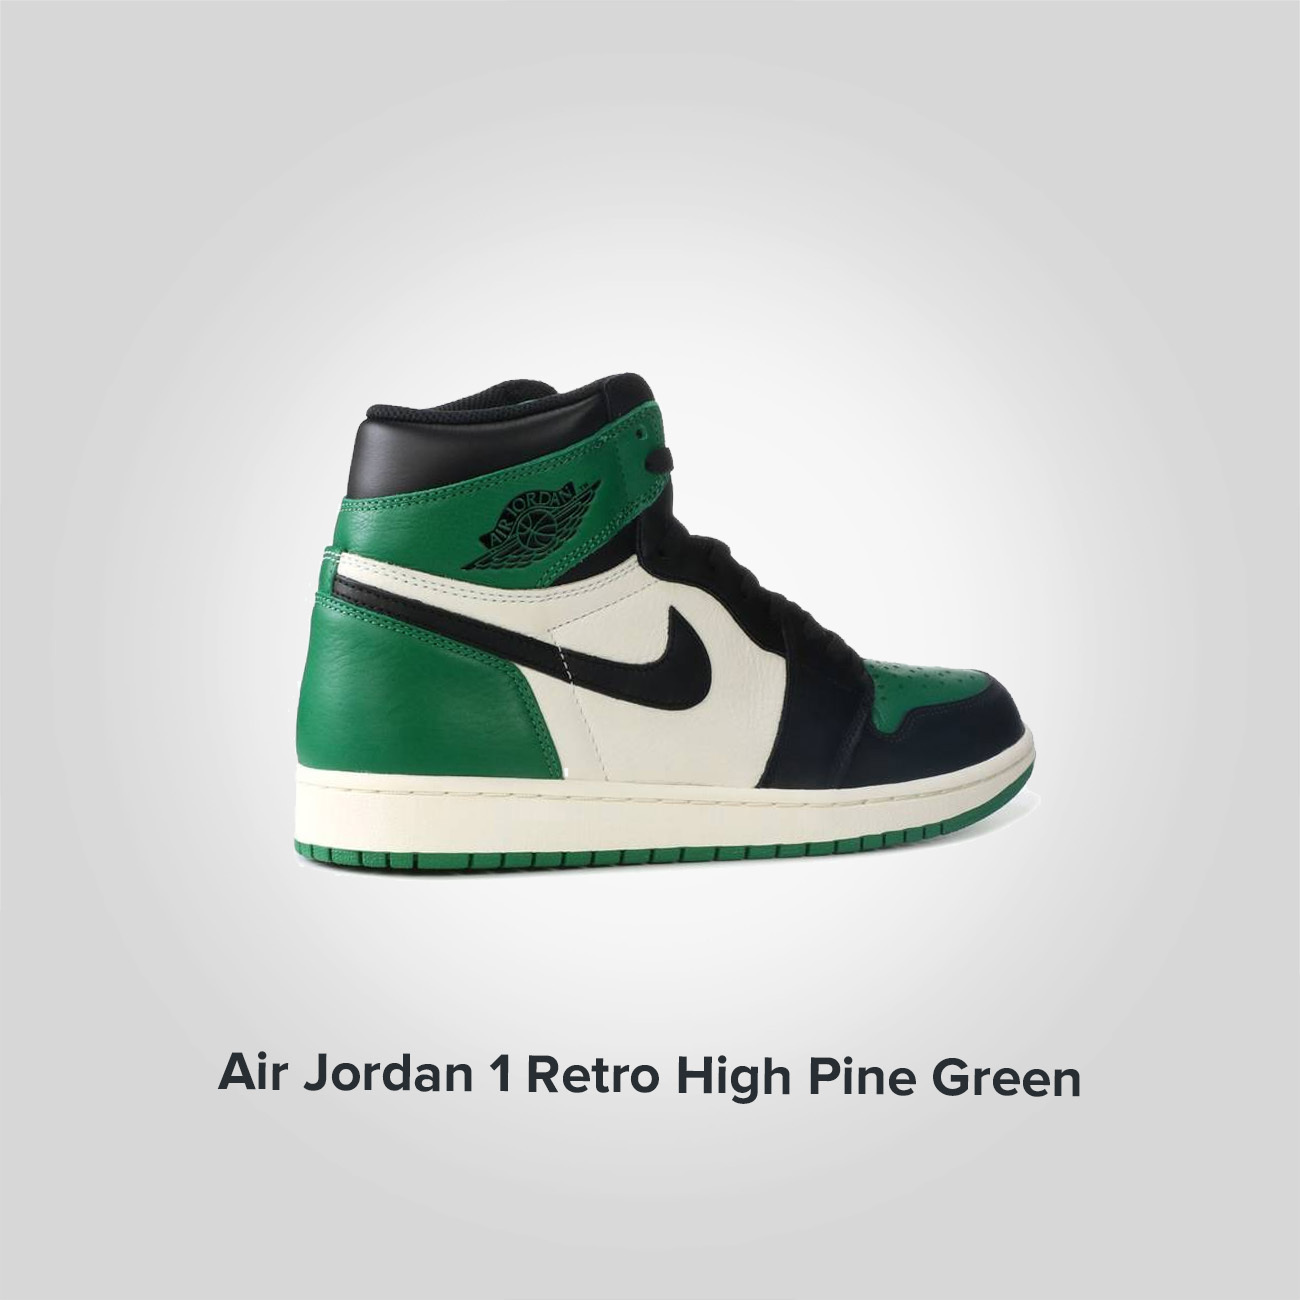 Jordan 1 Retro High Pine Green